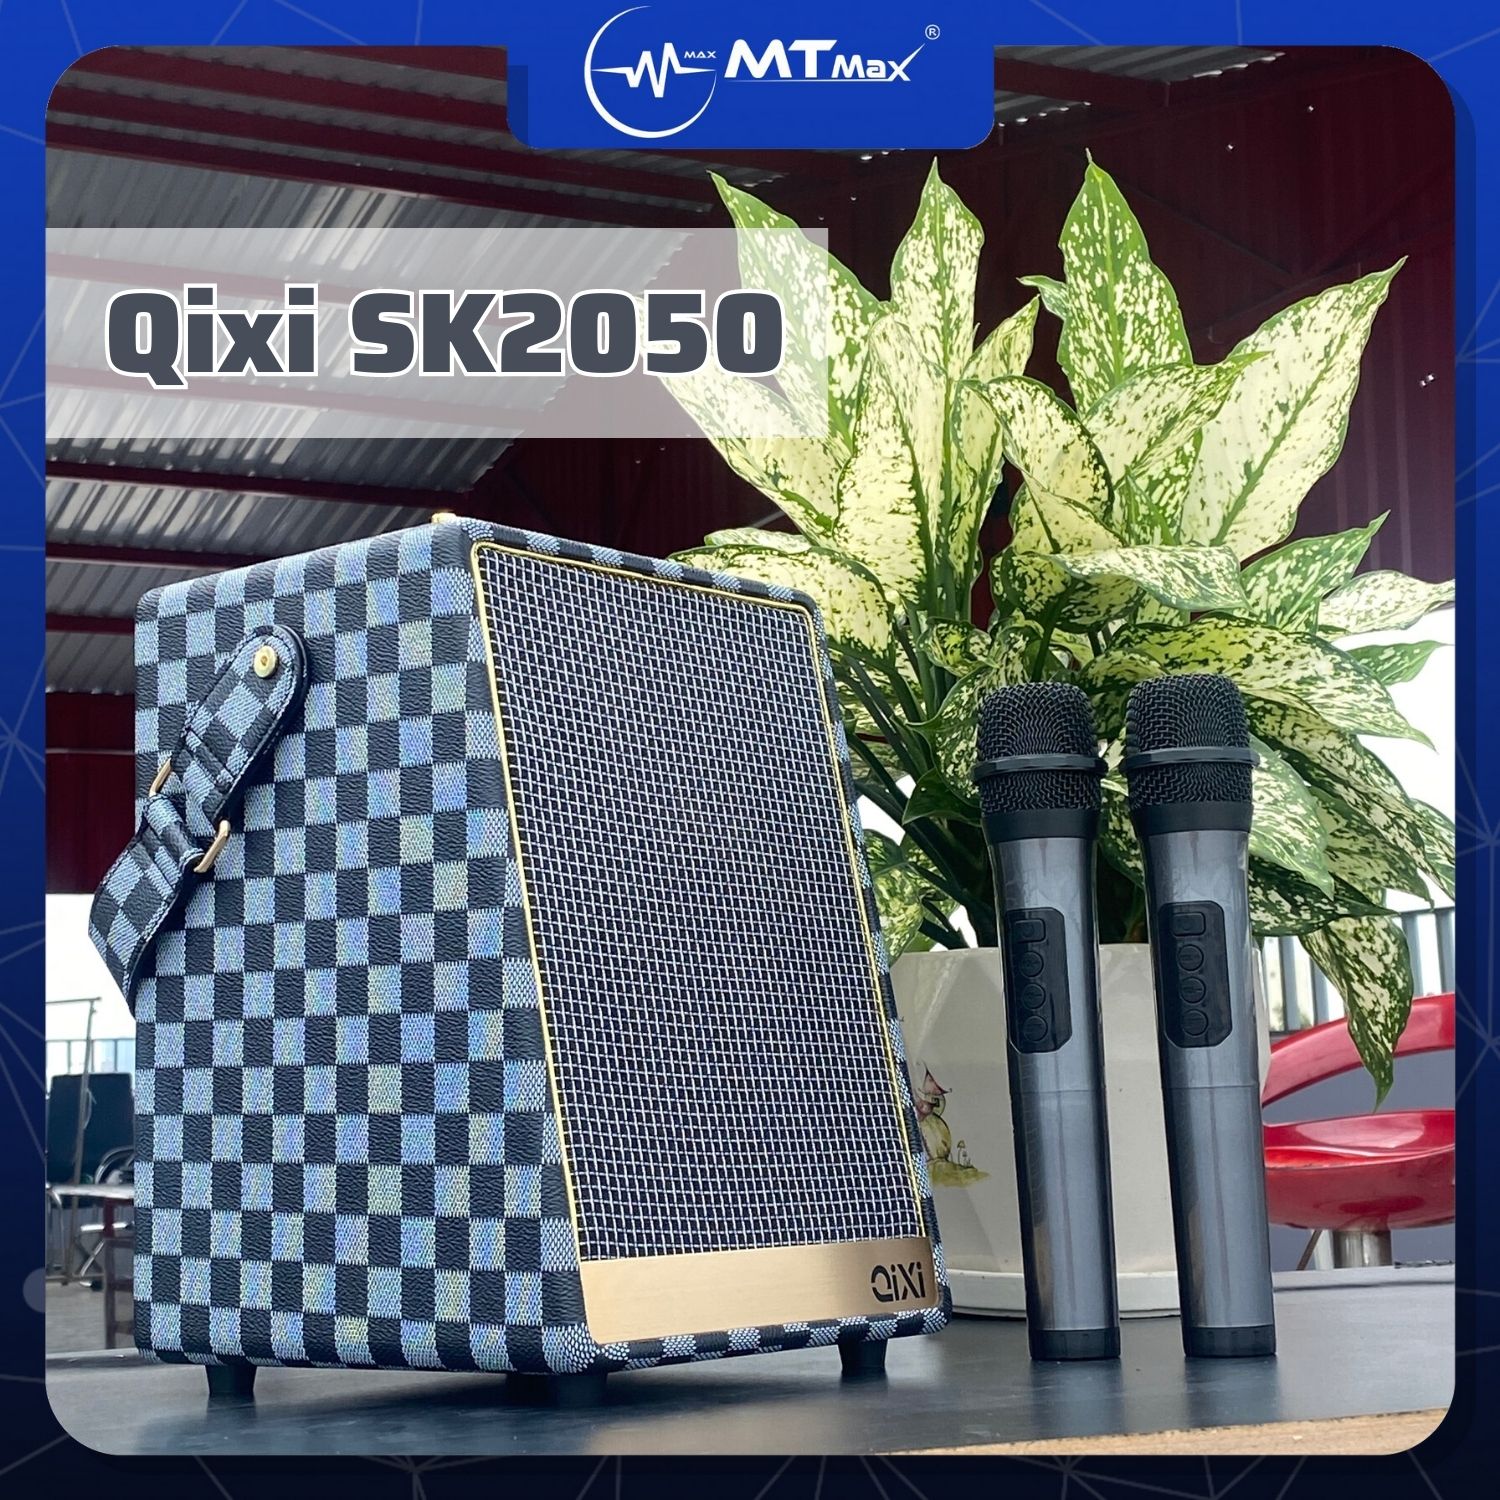 Loa Karaoke Qixi SK-2050